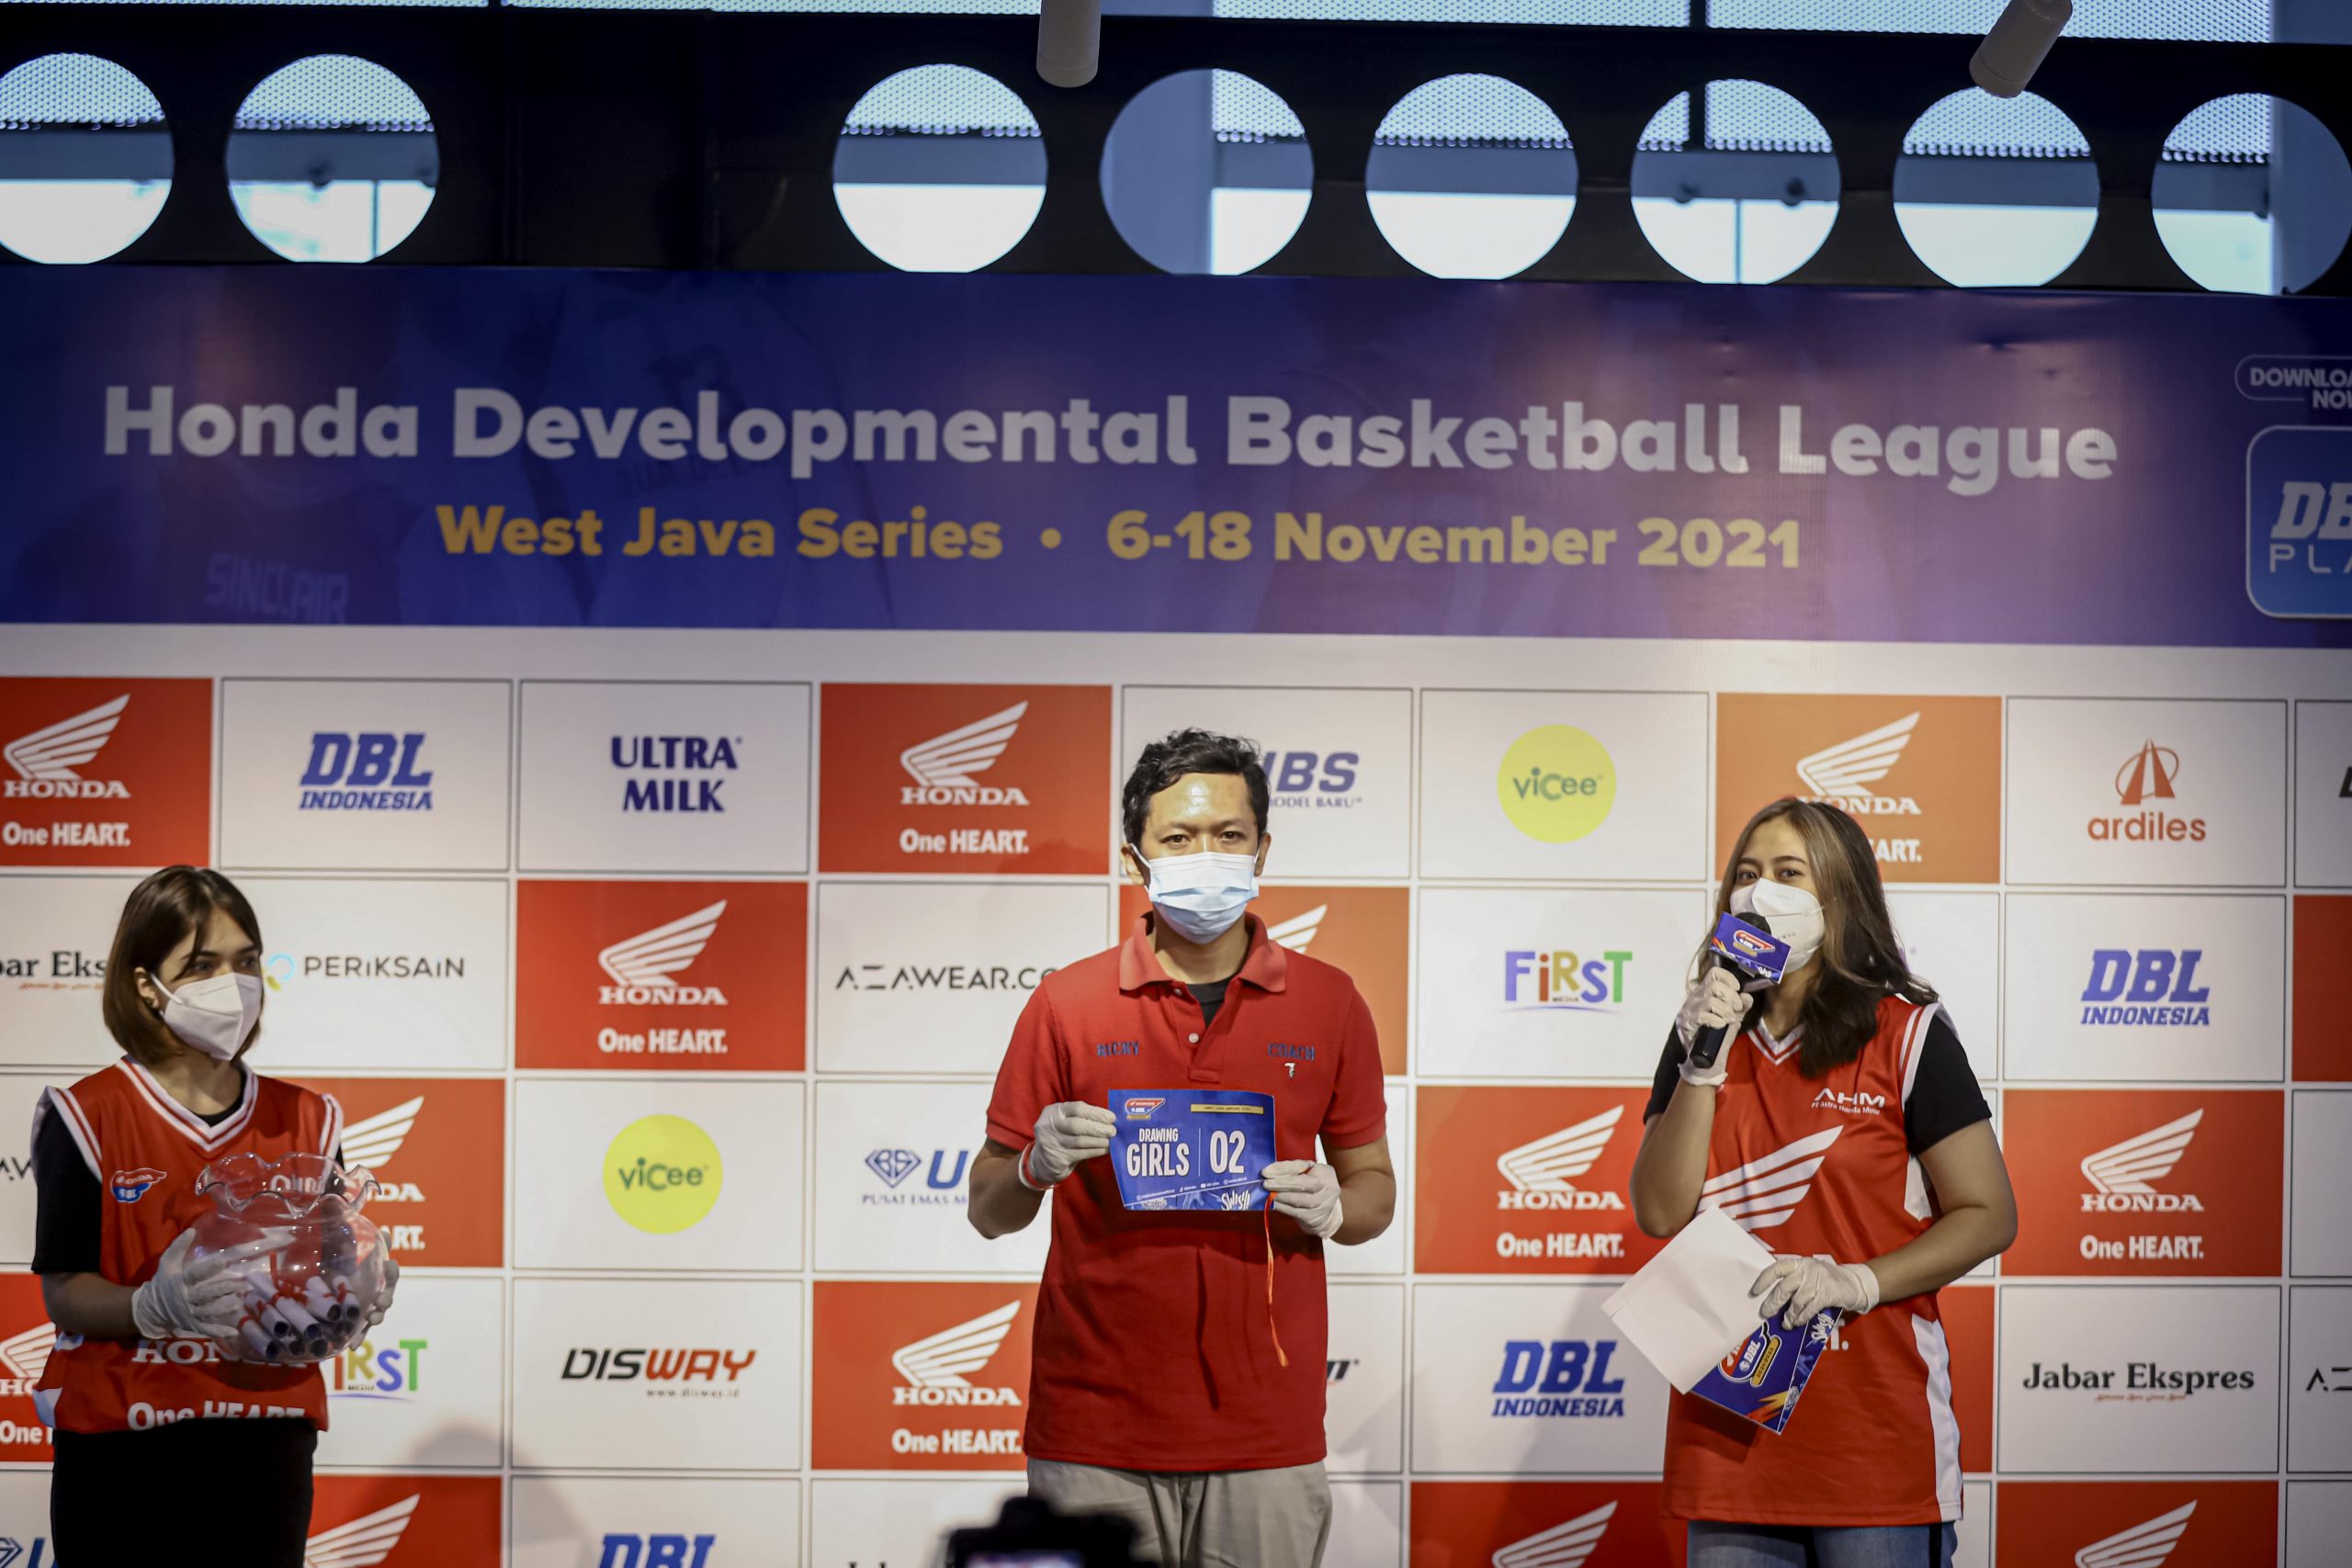 AMBISI: Riki Hidayat, pelatih SMAN 2 Bandung sebagai perwakilan tim putra dan putri pada saat sesi drawing Senin (1/11) lalu, untuk menentukan posisi pada bagan Honda DBL 2021 West Java Series.